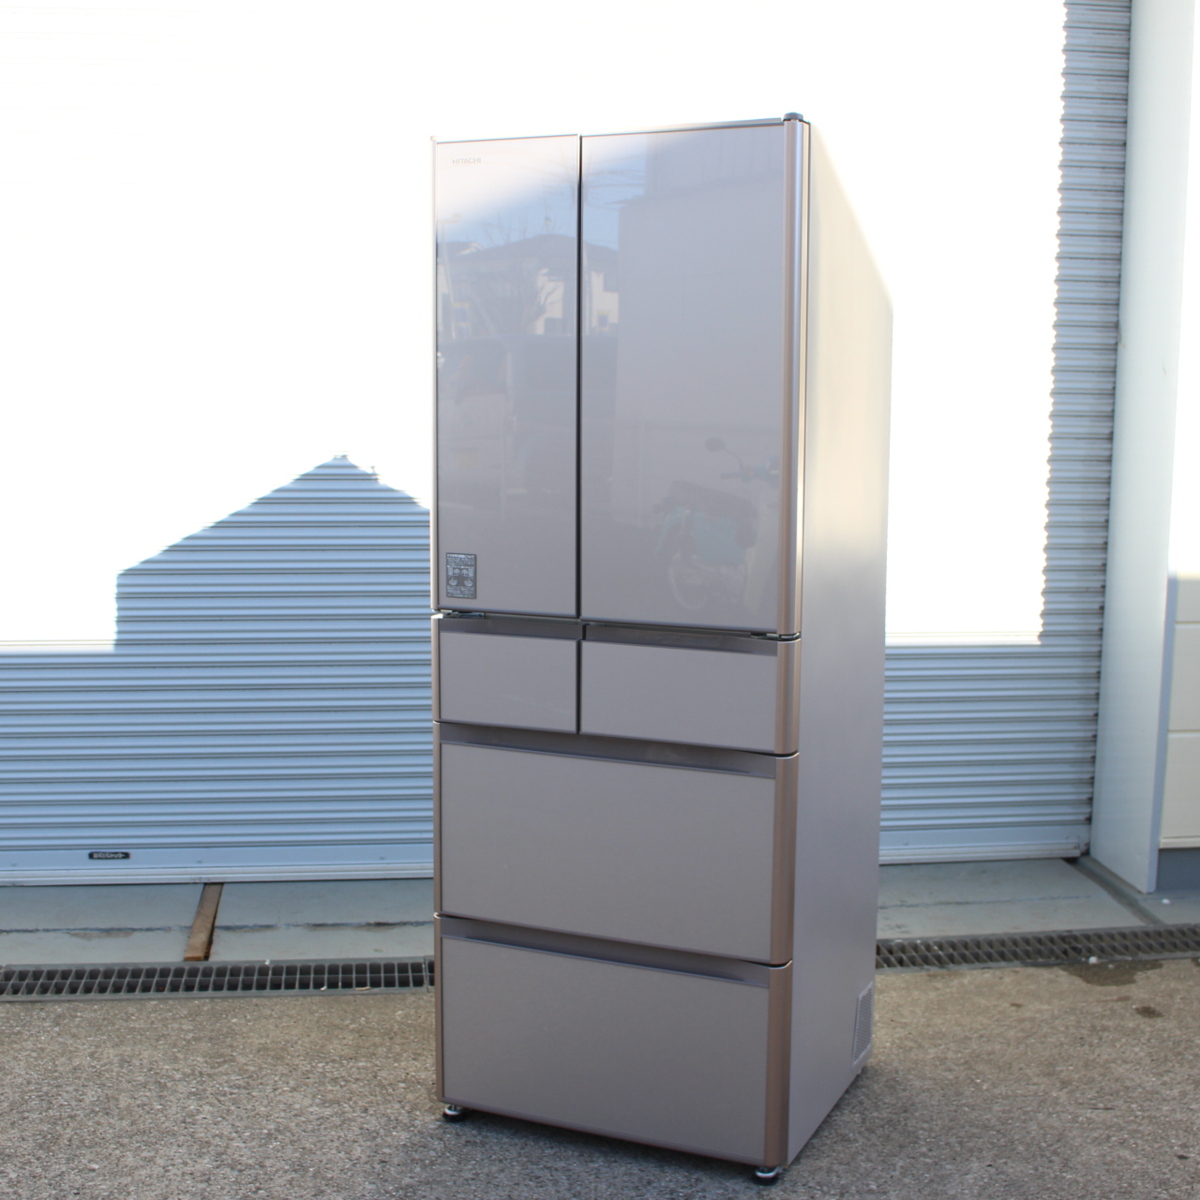 ◆日立 R-XG5600H 内容積555L 2017年製 真空チルド冷蔵庫